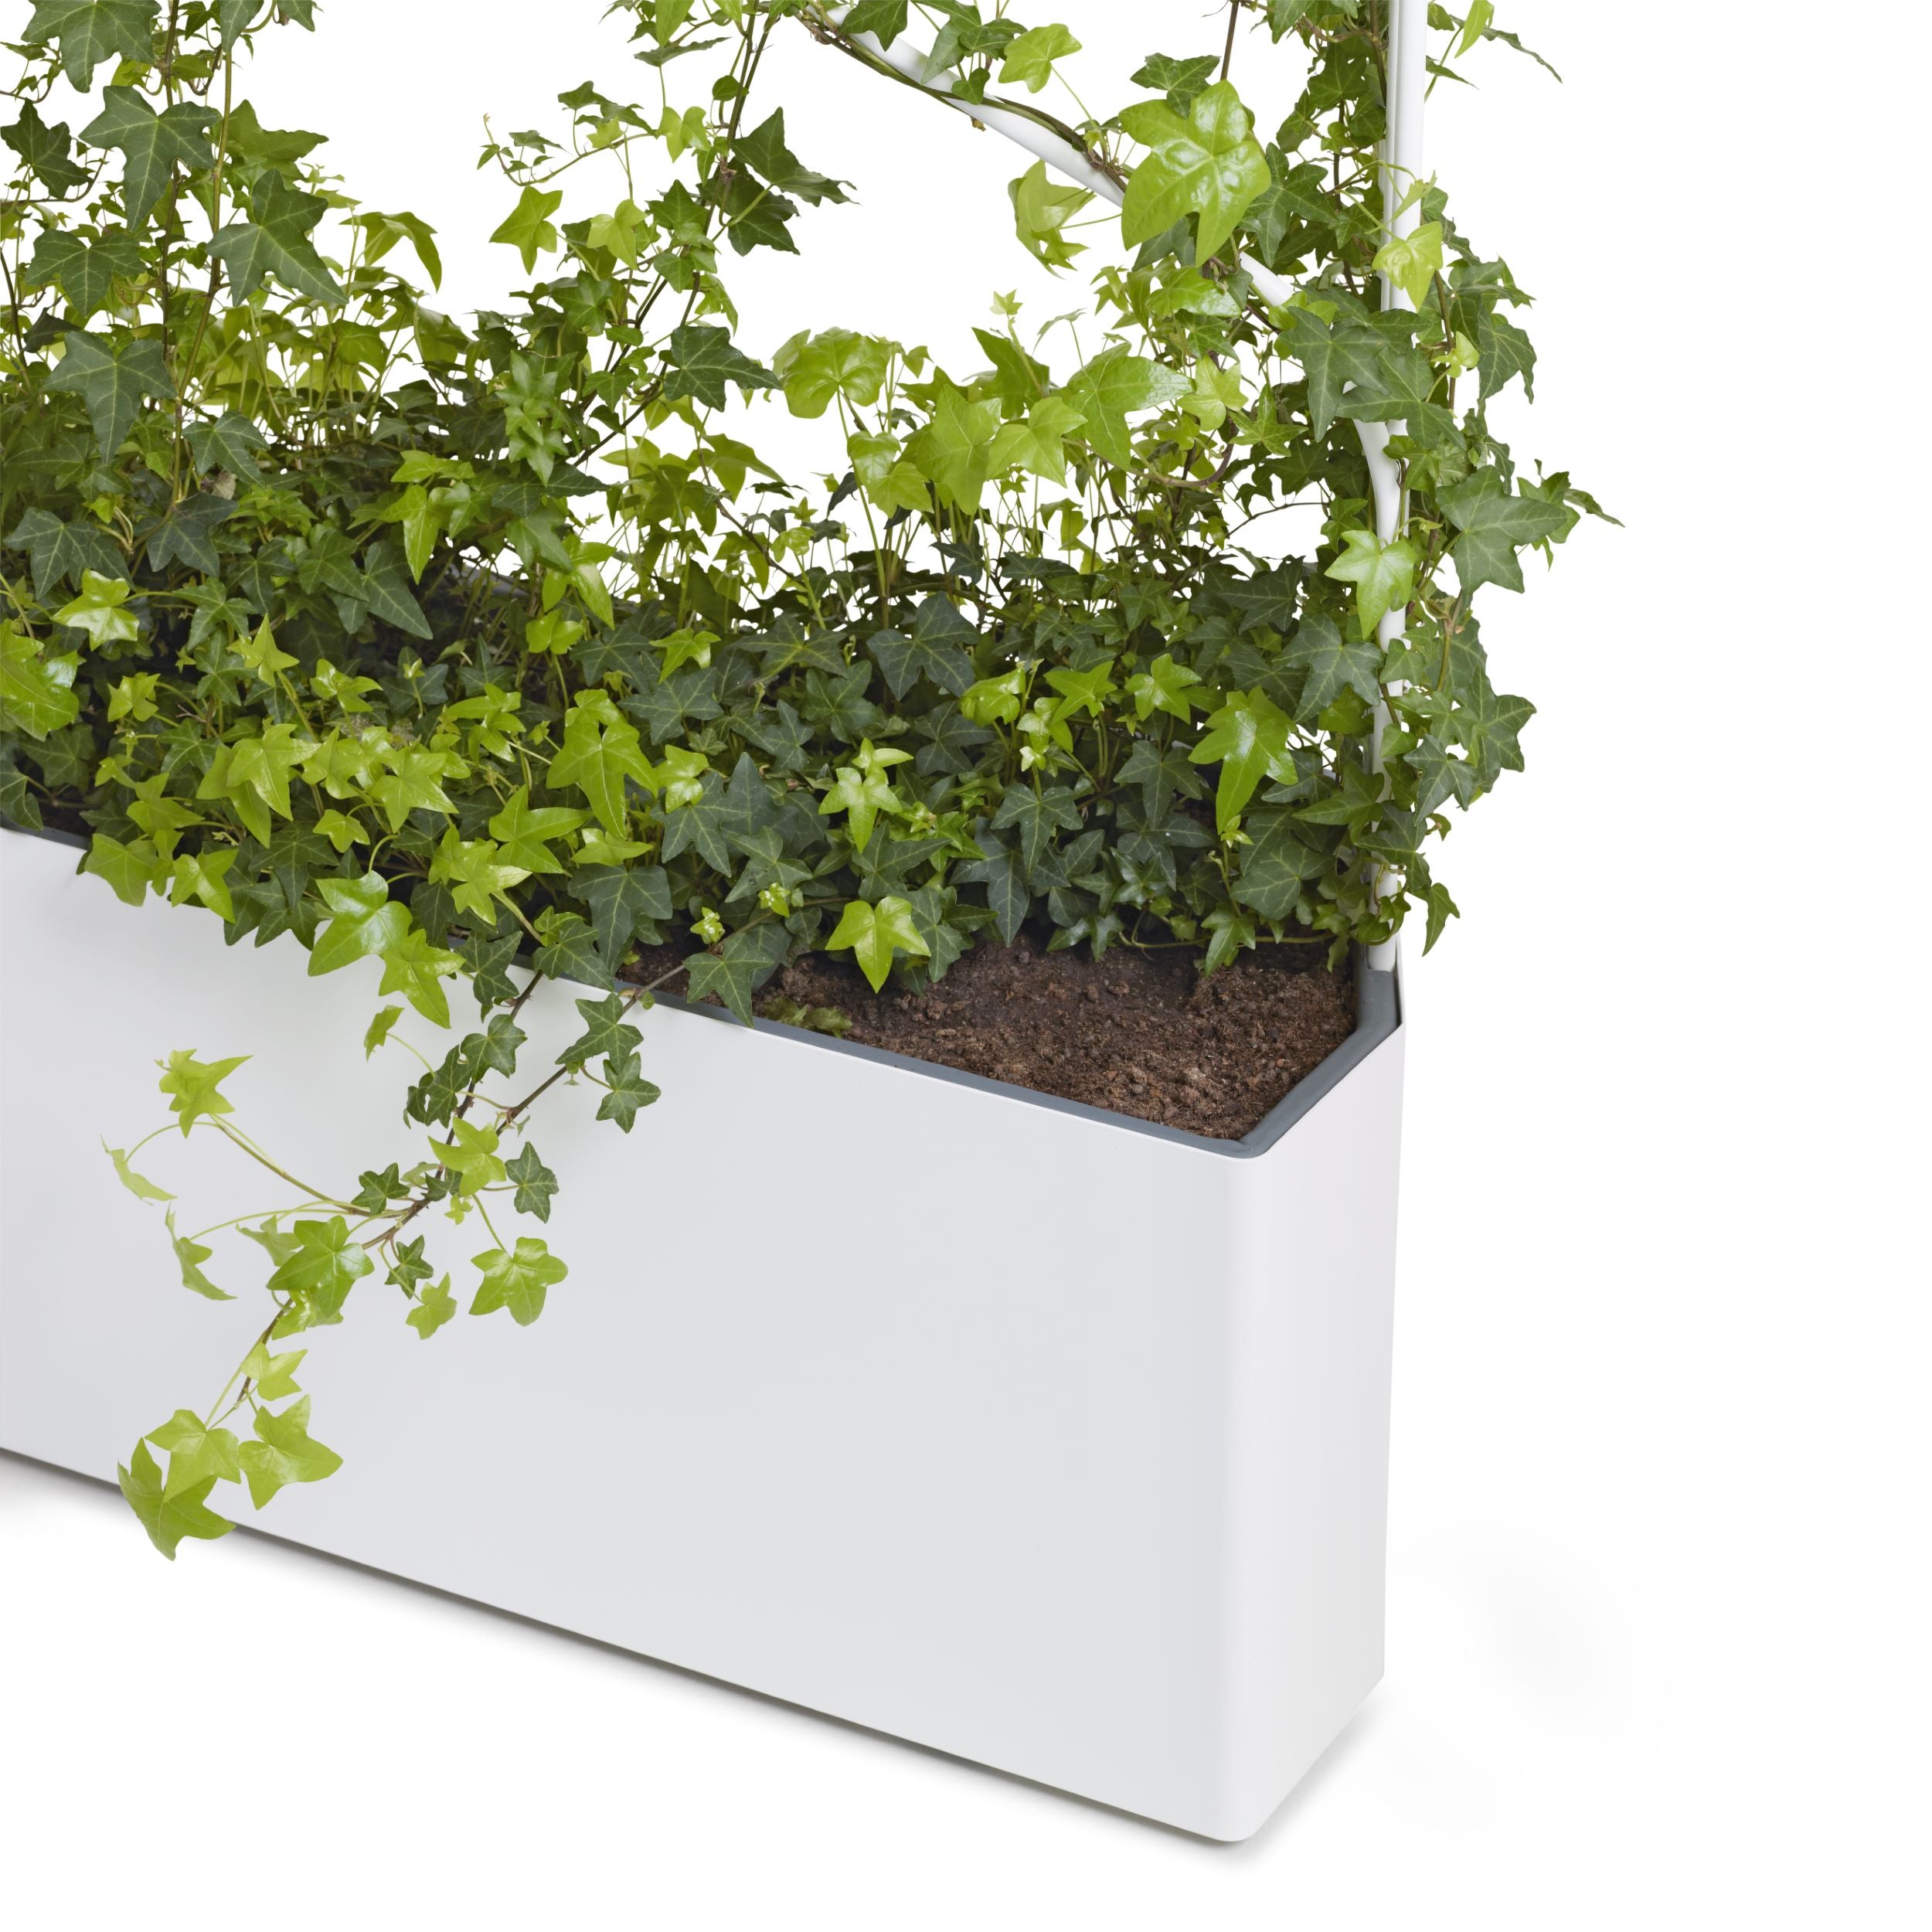 Offecct O2ASIS Green Divider Planter Box